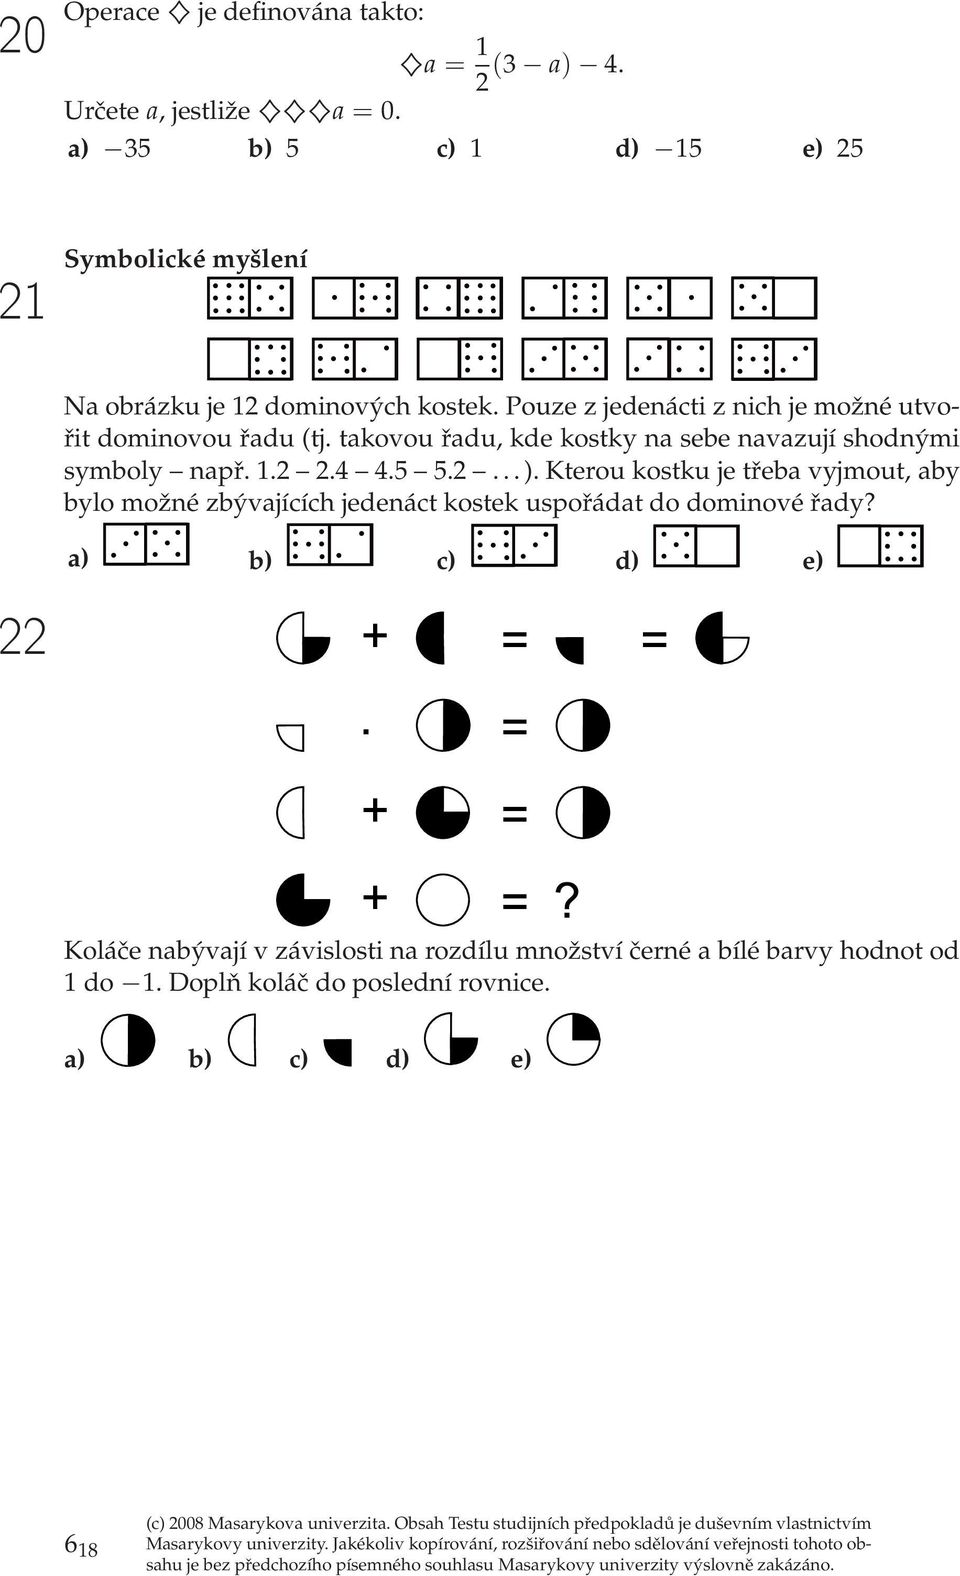 Pouz z jdnácti z nich j možné utvořit dominovou řadu (tj. takovou řadu, kd kostky na sb navazují shodnými symboly např. 1.2 2.4 4.5 5.